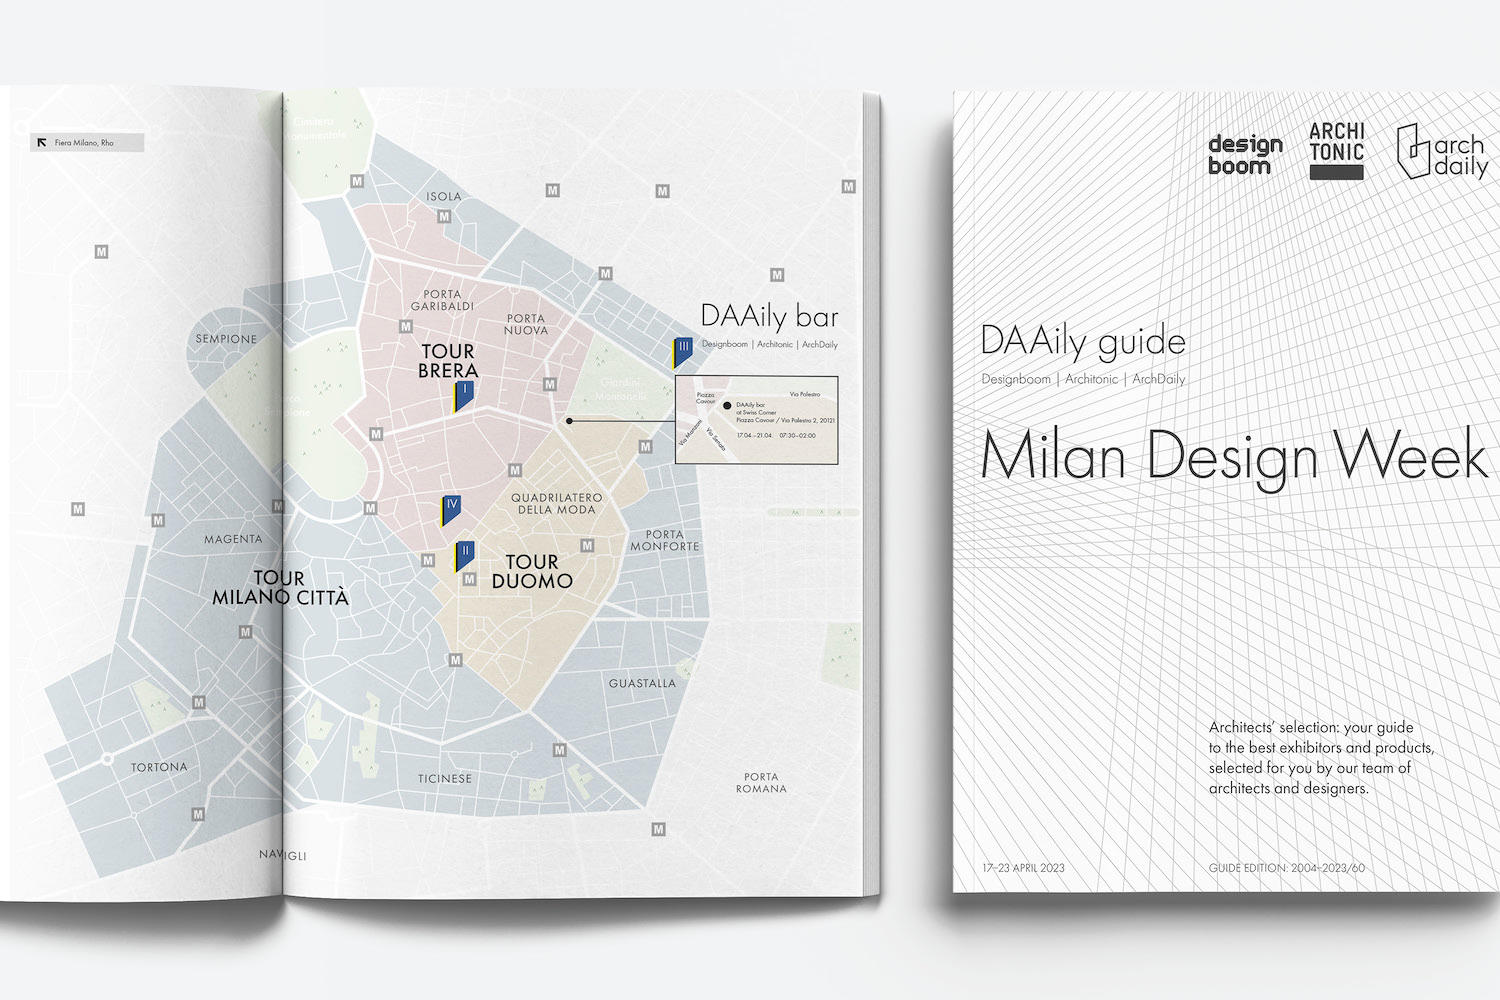 Architonic City Guide: Milan Design Week 2021